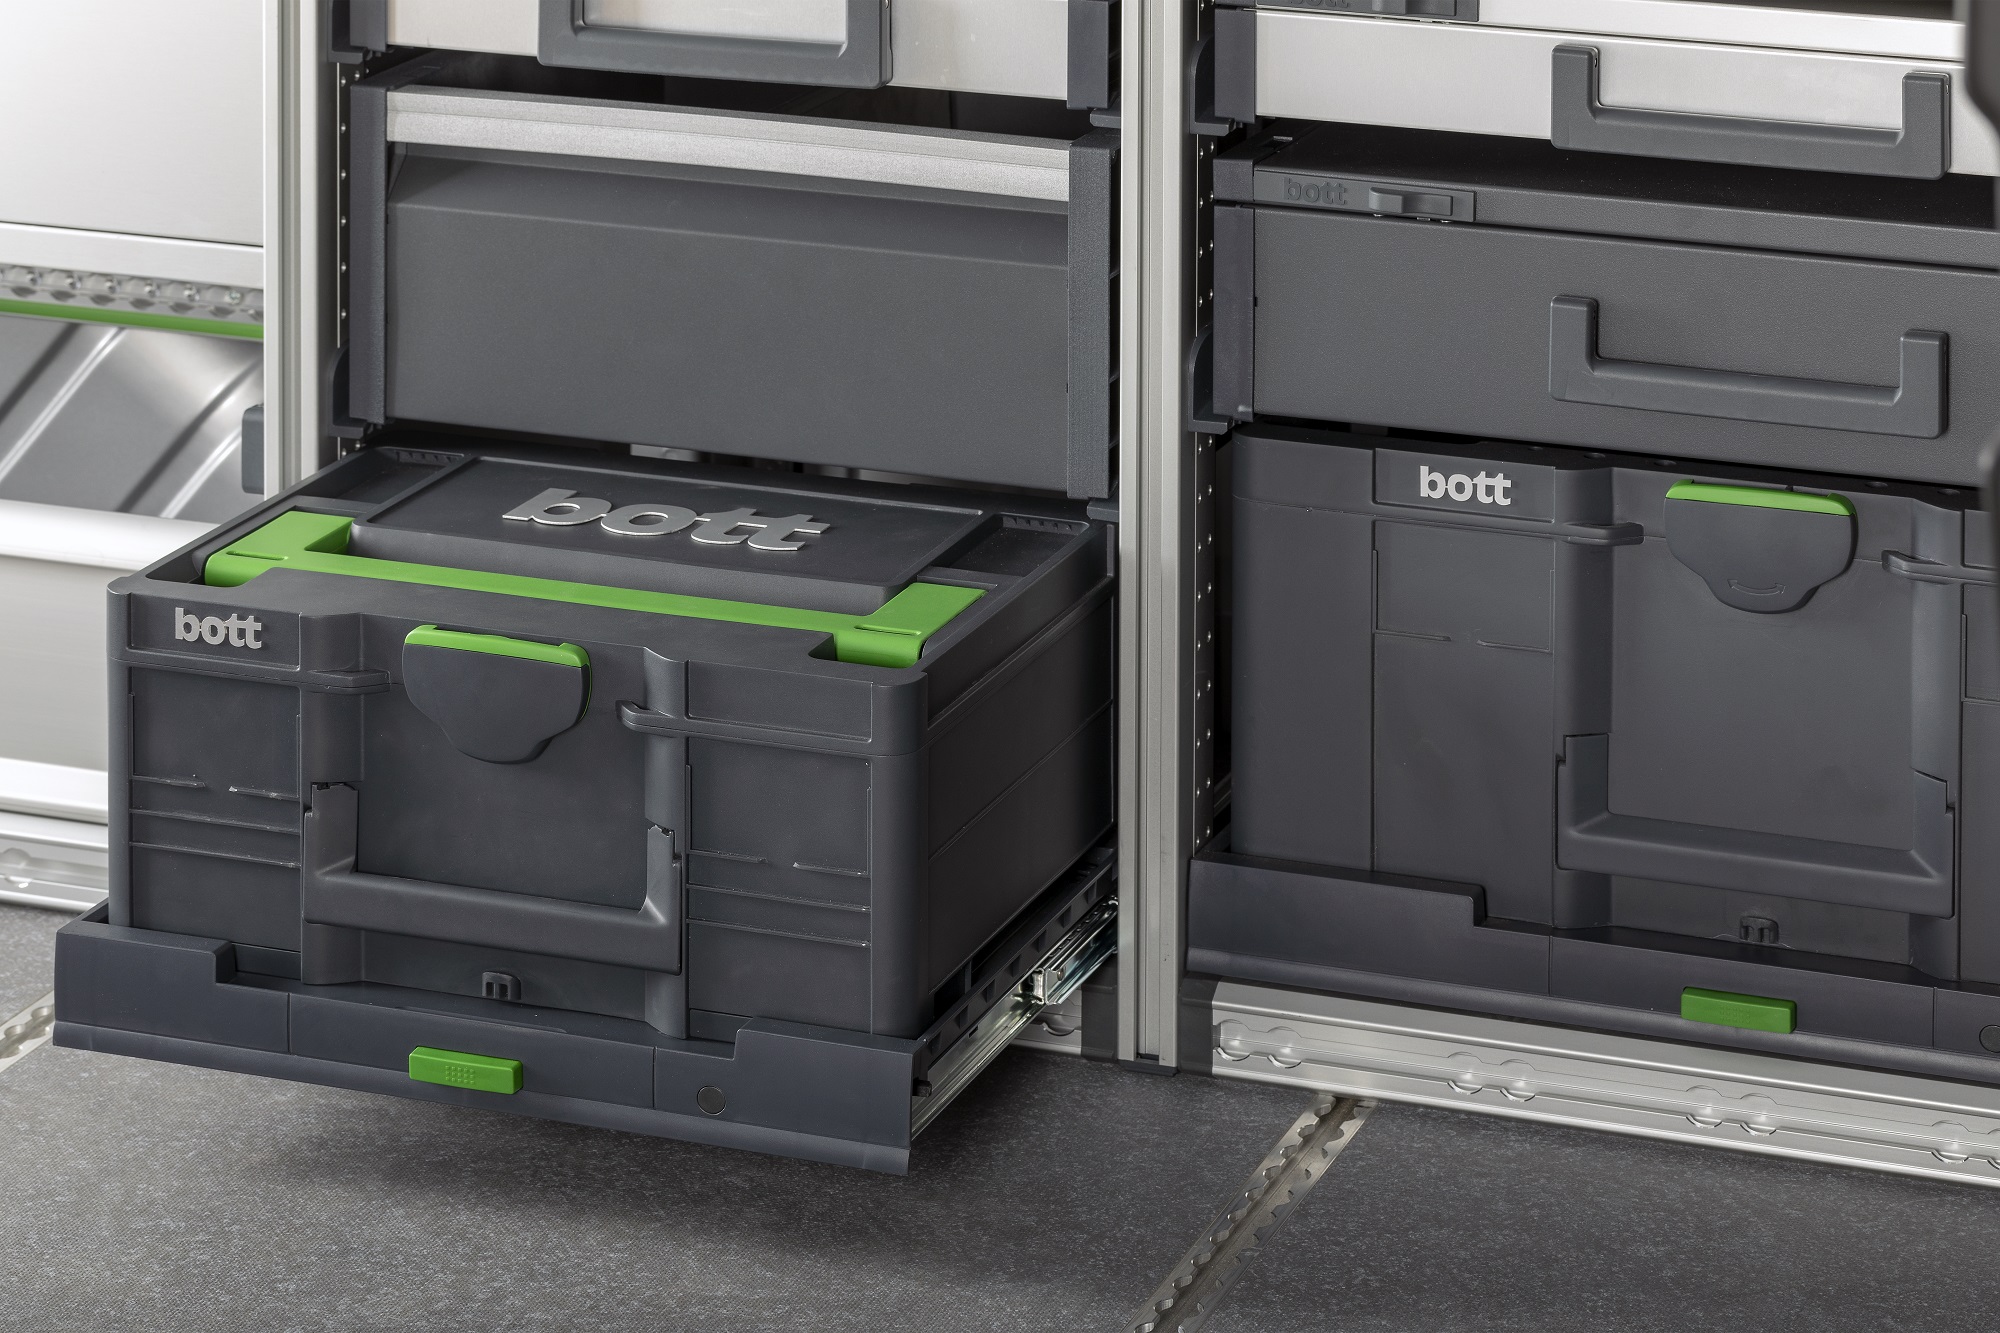 Facile integrazione del sistema di valigie Systainer³ in officina, nell'equipaggiamento dei veicoli o in cantiere.